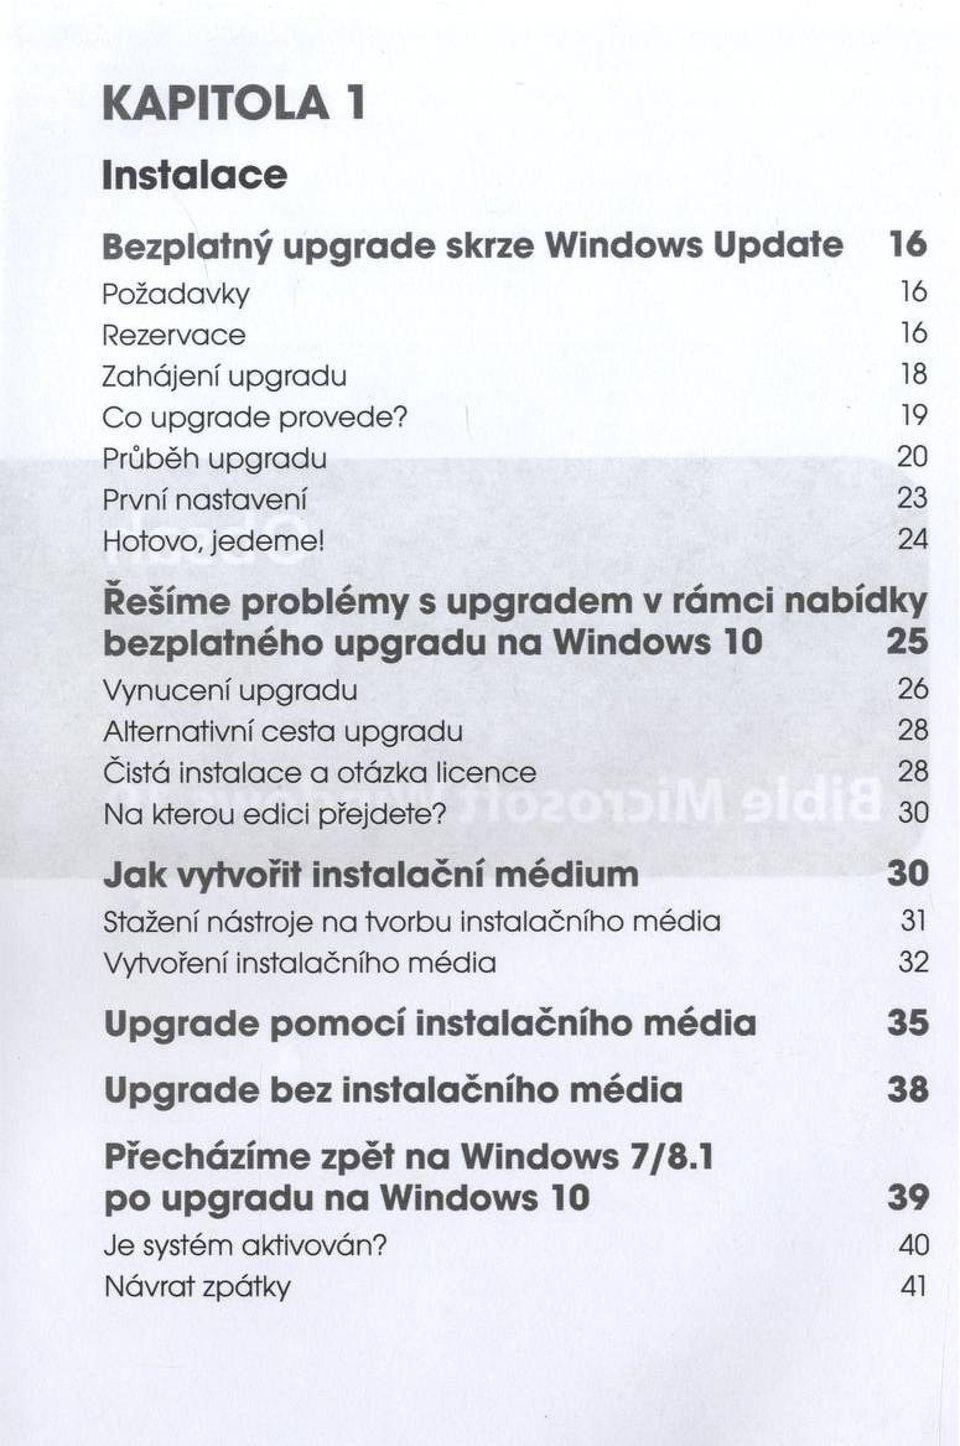 24 Řešíme problémy s upgradem v rámci nabídky bezplatného upgradu na Windows 10 25 Vynucení upgradu 26 Alternativní cesta u p gra d u 28 Čistá instalace a otázka licence